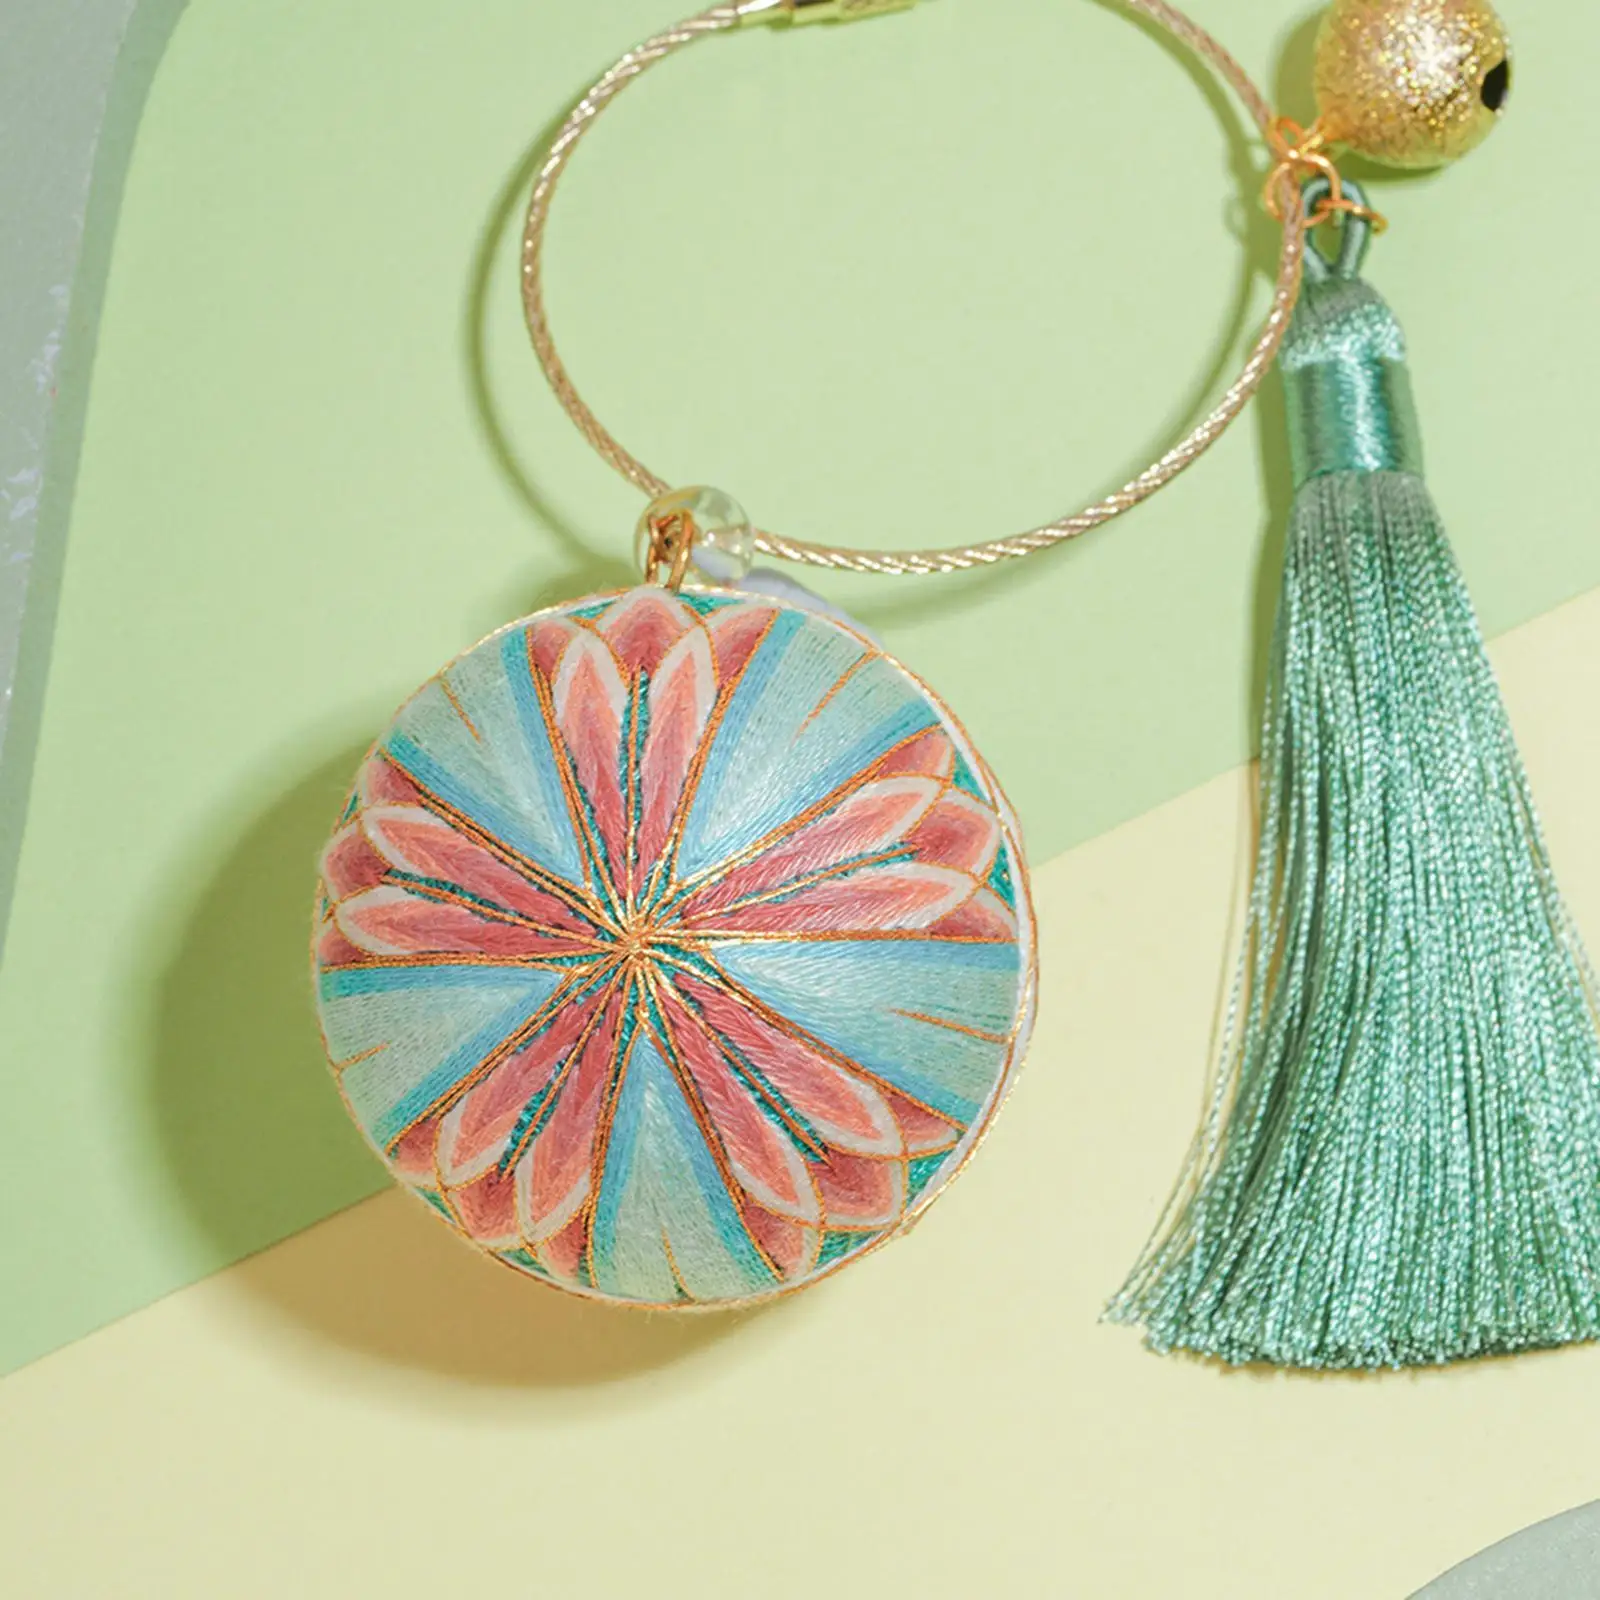 Temari Ball Embroidery DIY Handbag Hanging Thread Small Ball for Women Girl